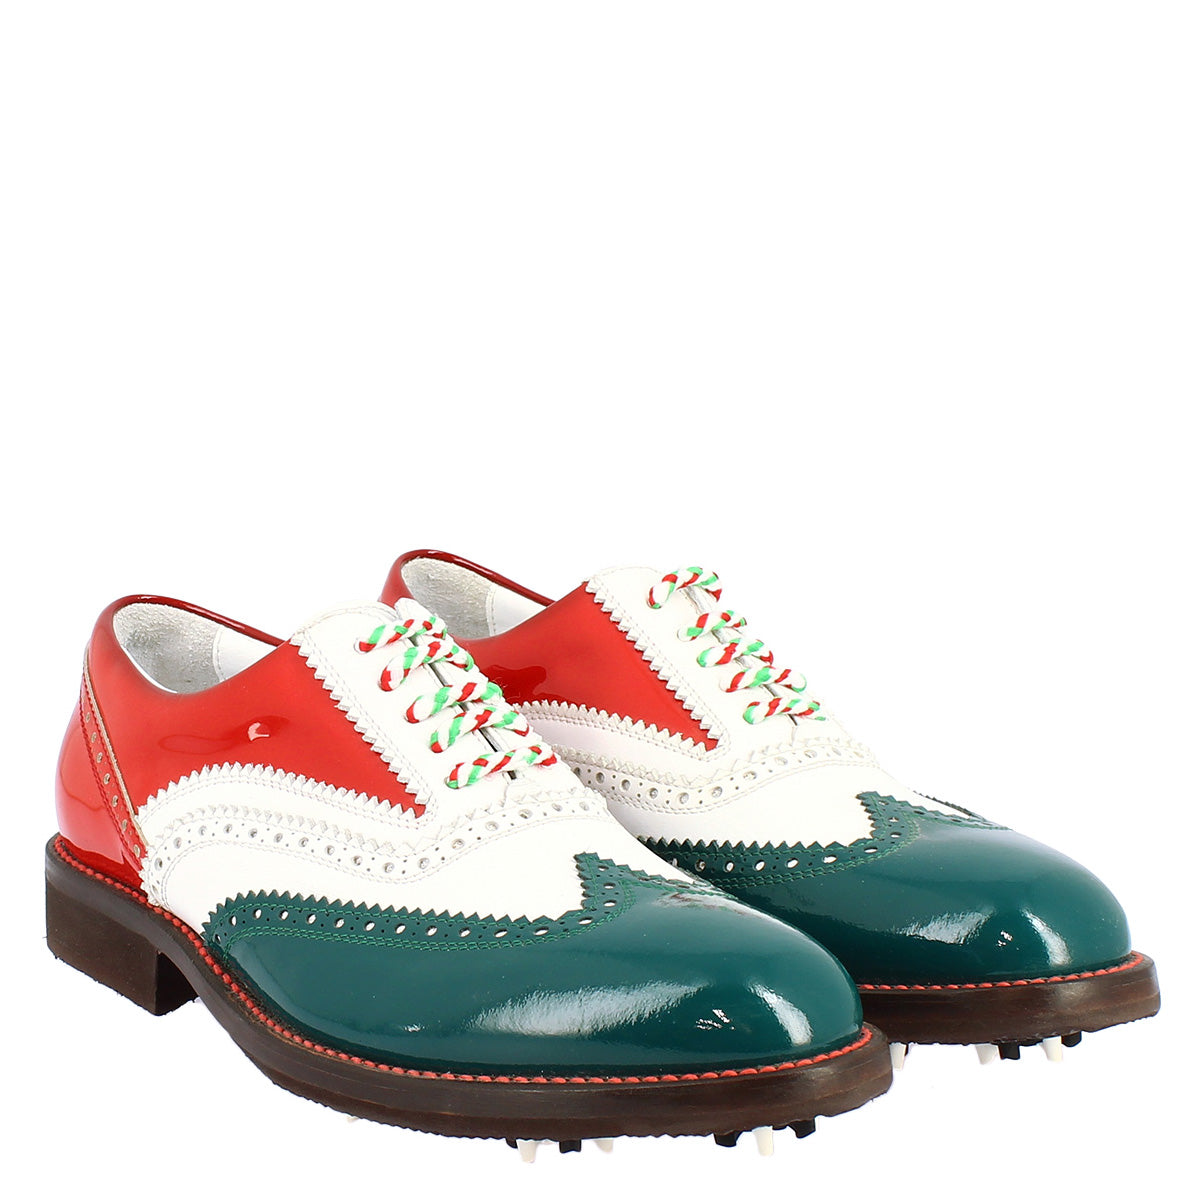 Chaussures de golf pour femmes fabriquées à la main aux couleurs du drapeau italien